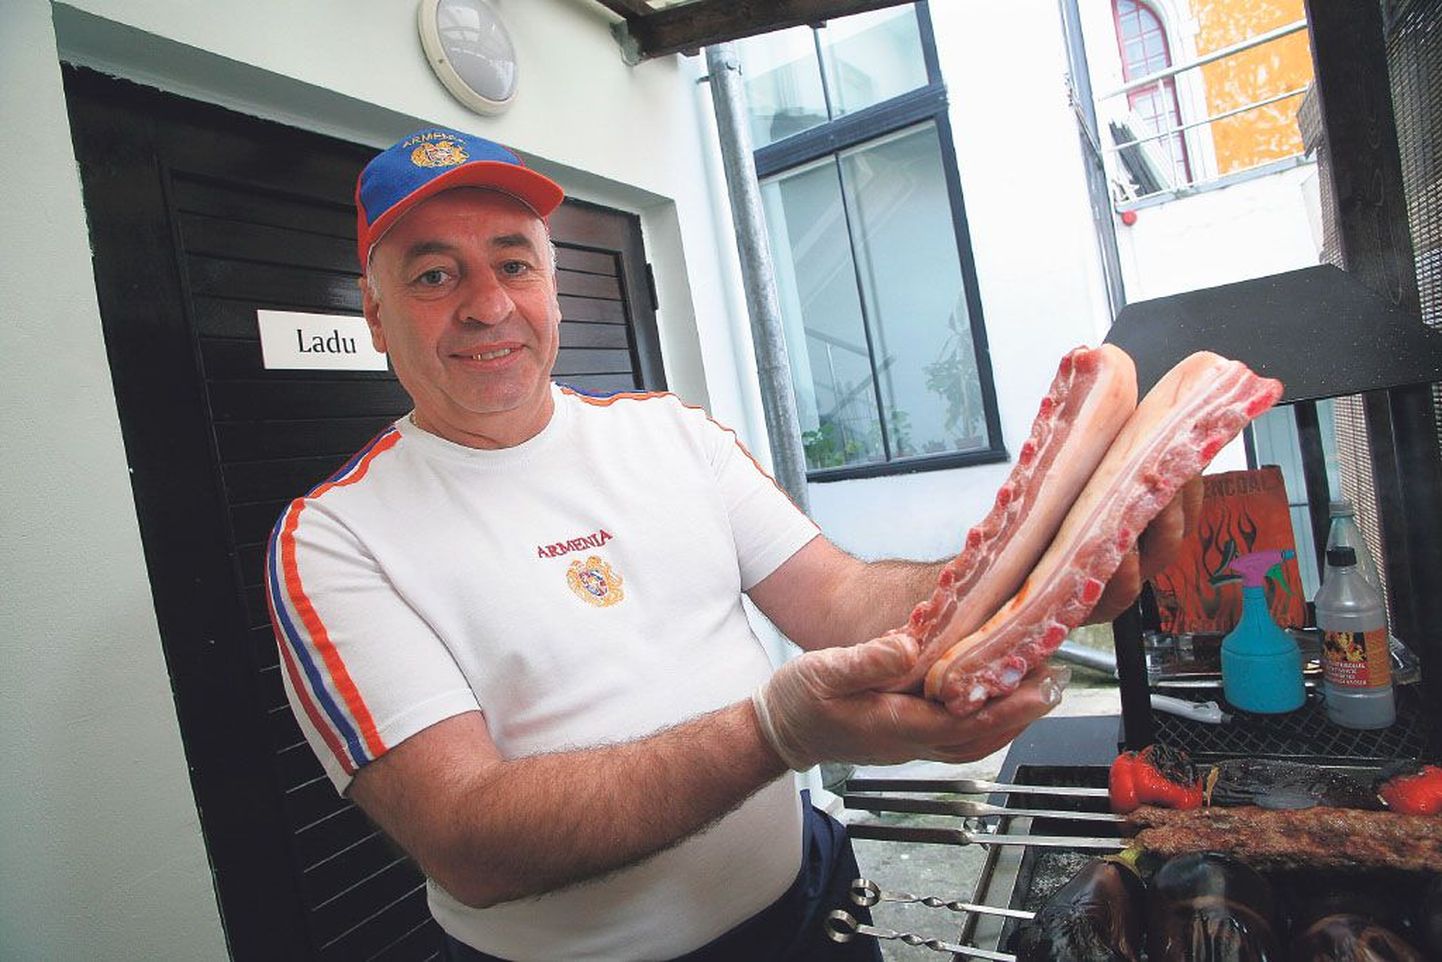 Pärnus Armeenia restorani pidava Spartak Akopdžanjani grill on kirev, kõrvuti lihaga on seal vardasse aetud hulk köögivilju, parima grillribi saamiseks soovitab ta valida läbikasvanud tükid.